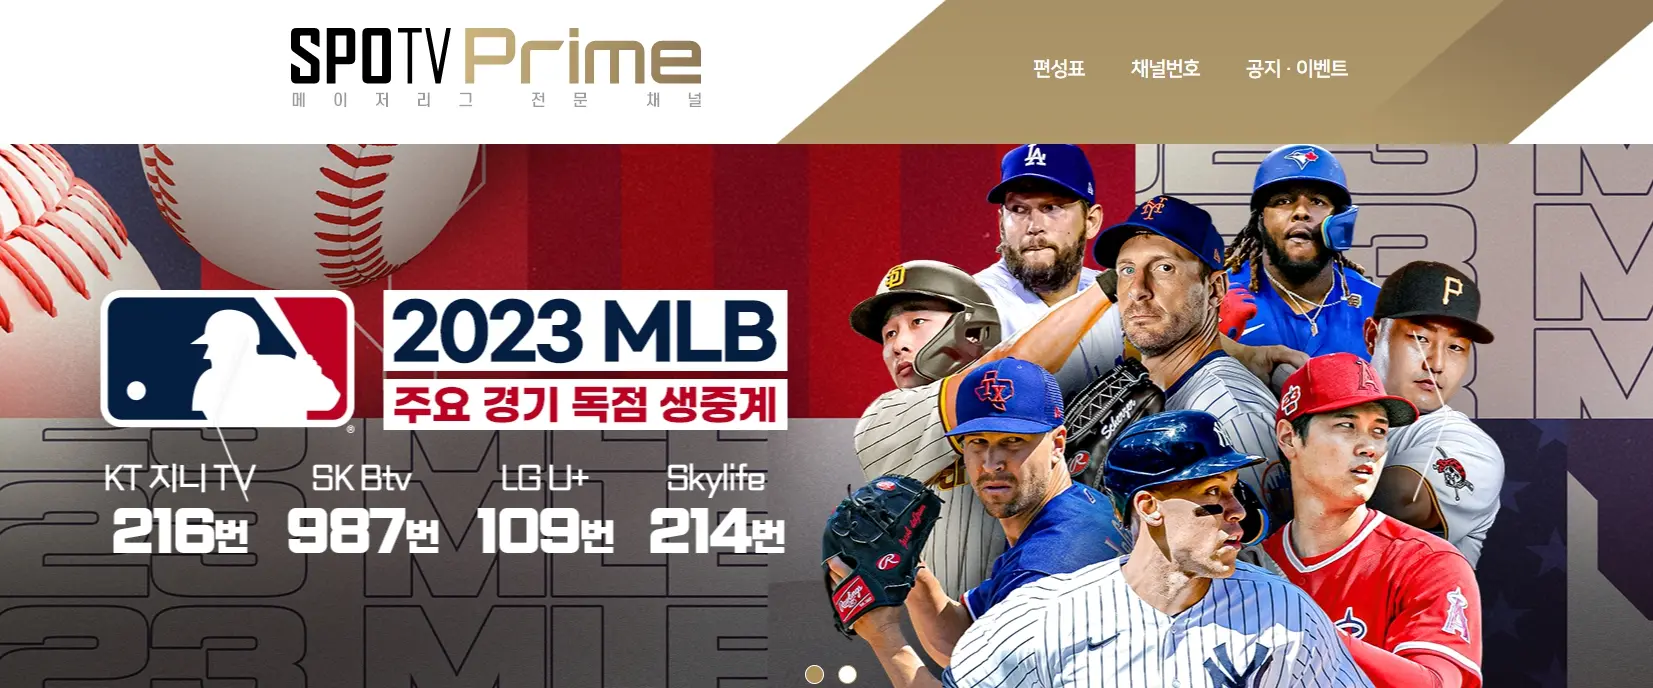 무료 유료 MLB 김하성 중계 채널 실시간 시청 사이트 완벽 가이드 2023  에그랭크